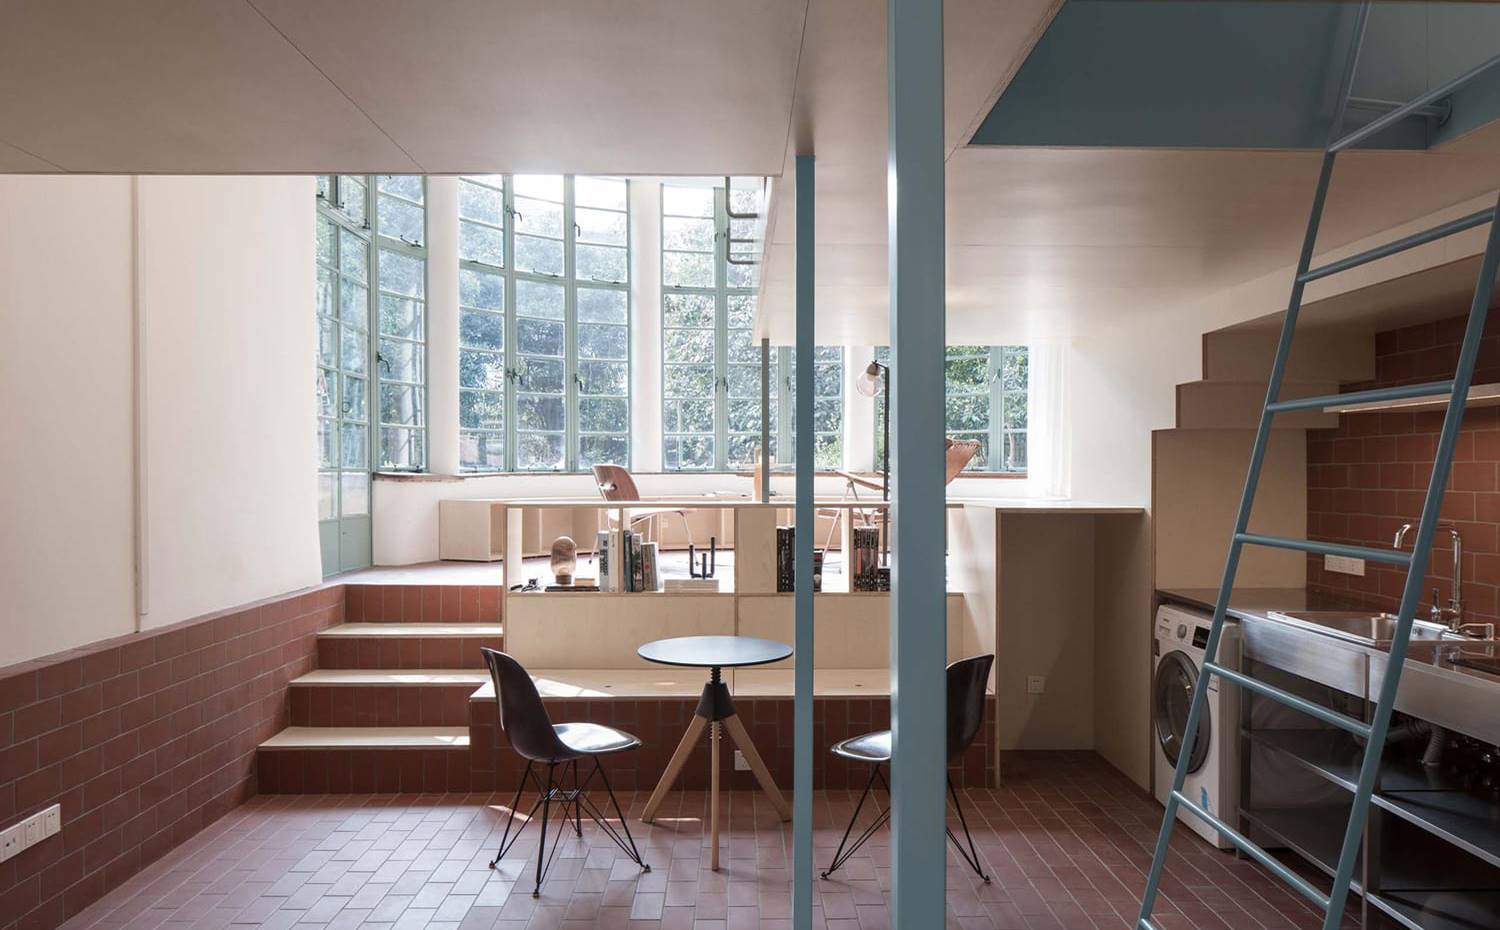 Zona de cocina y comedor con estructura de madera y metal. El mismo azul pálido que pinta la escalera interior se utiliza para los marcos de ventanas de metal exteriores.